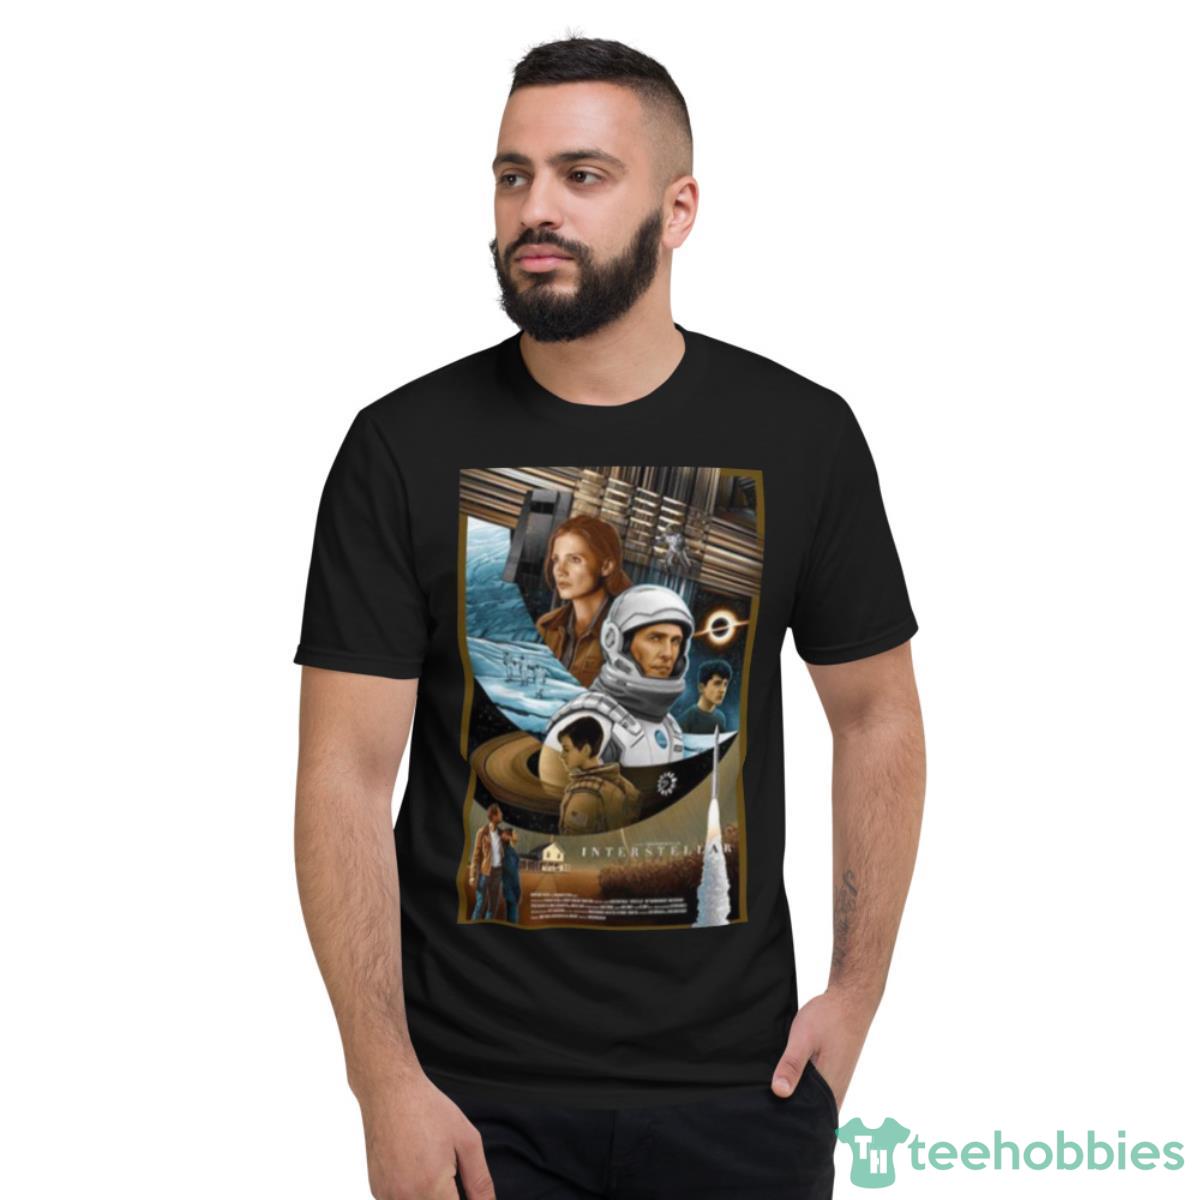 Best Space Movie Interstellar Shirt - Short Sleeve T-Shirt